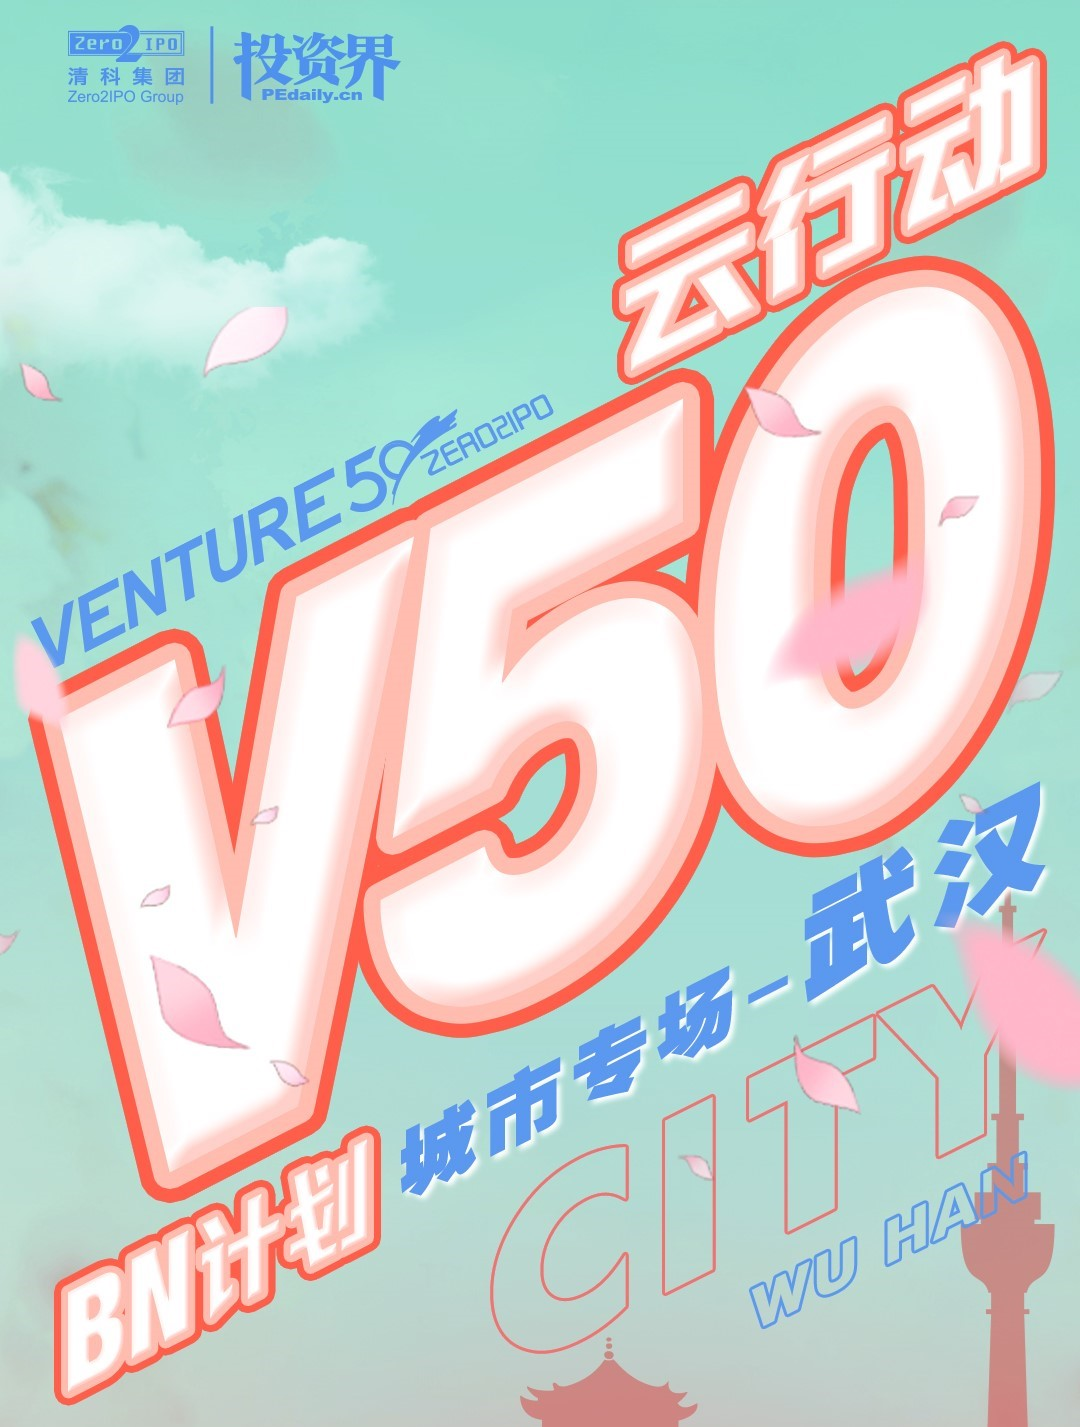 武汉重启在即，Venture50云行动重磅压轴-武汉专场路演收官！